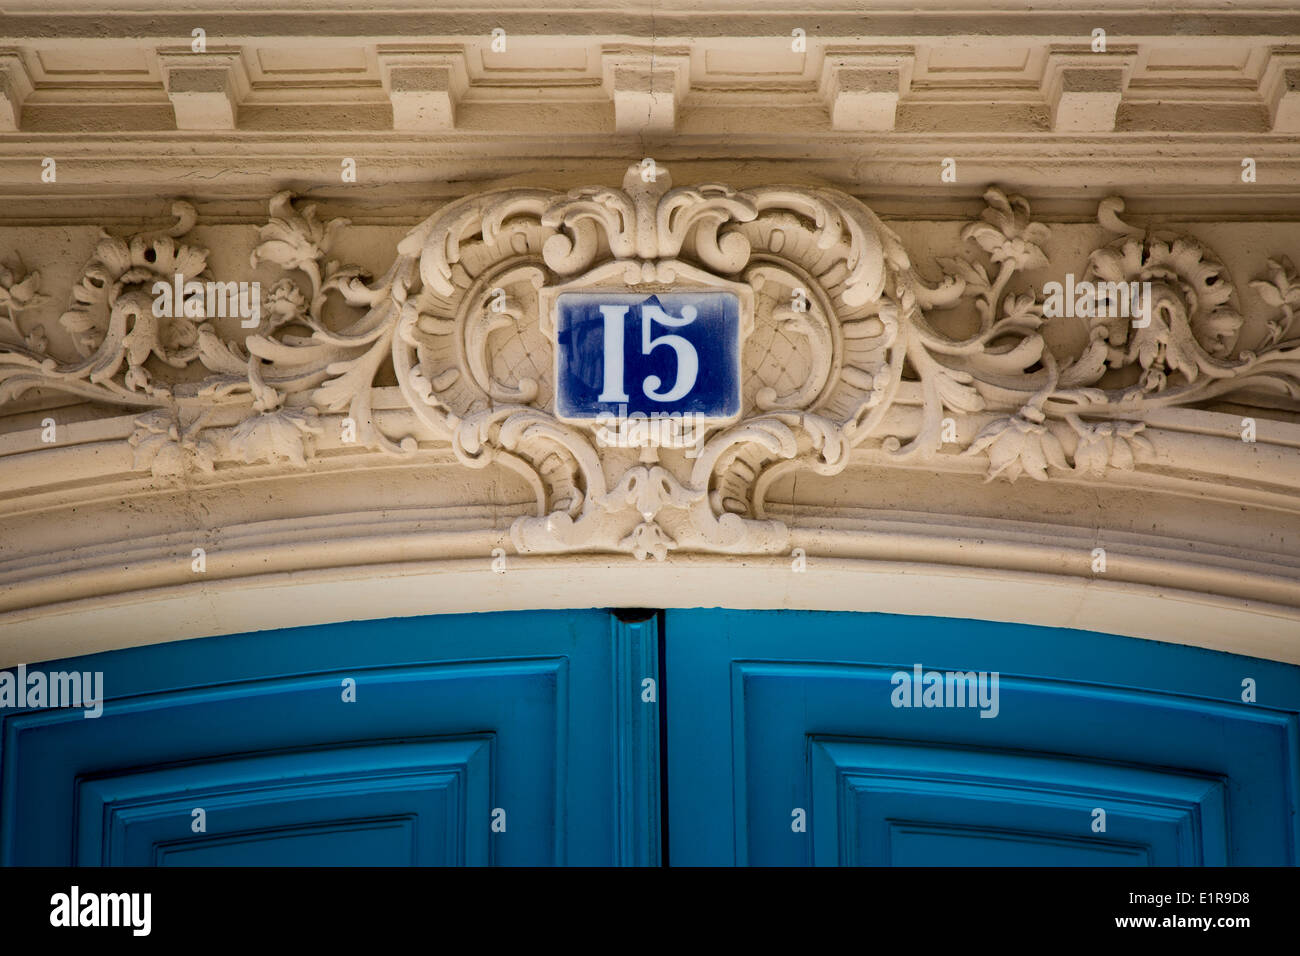 Numéro de l'adresse au-dessus de la porte avant pour home, Paris France Banque D'Images